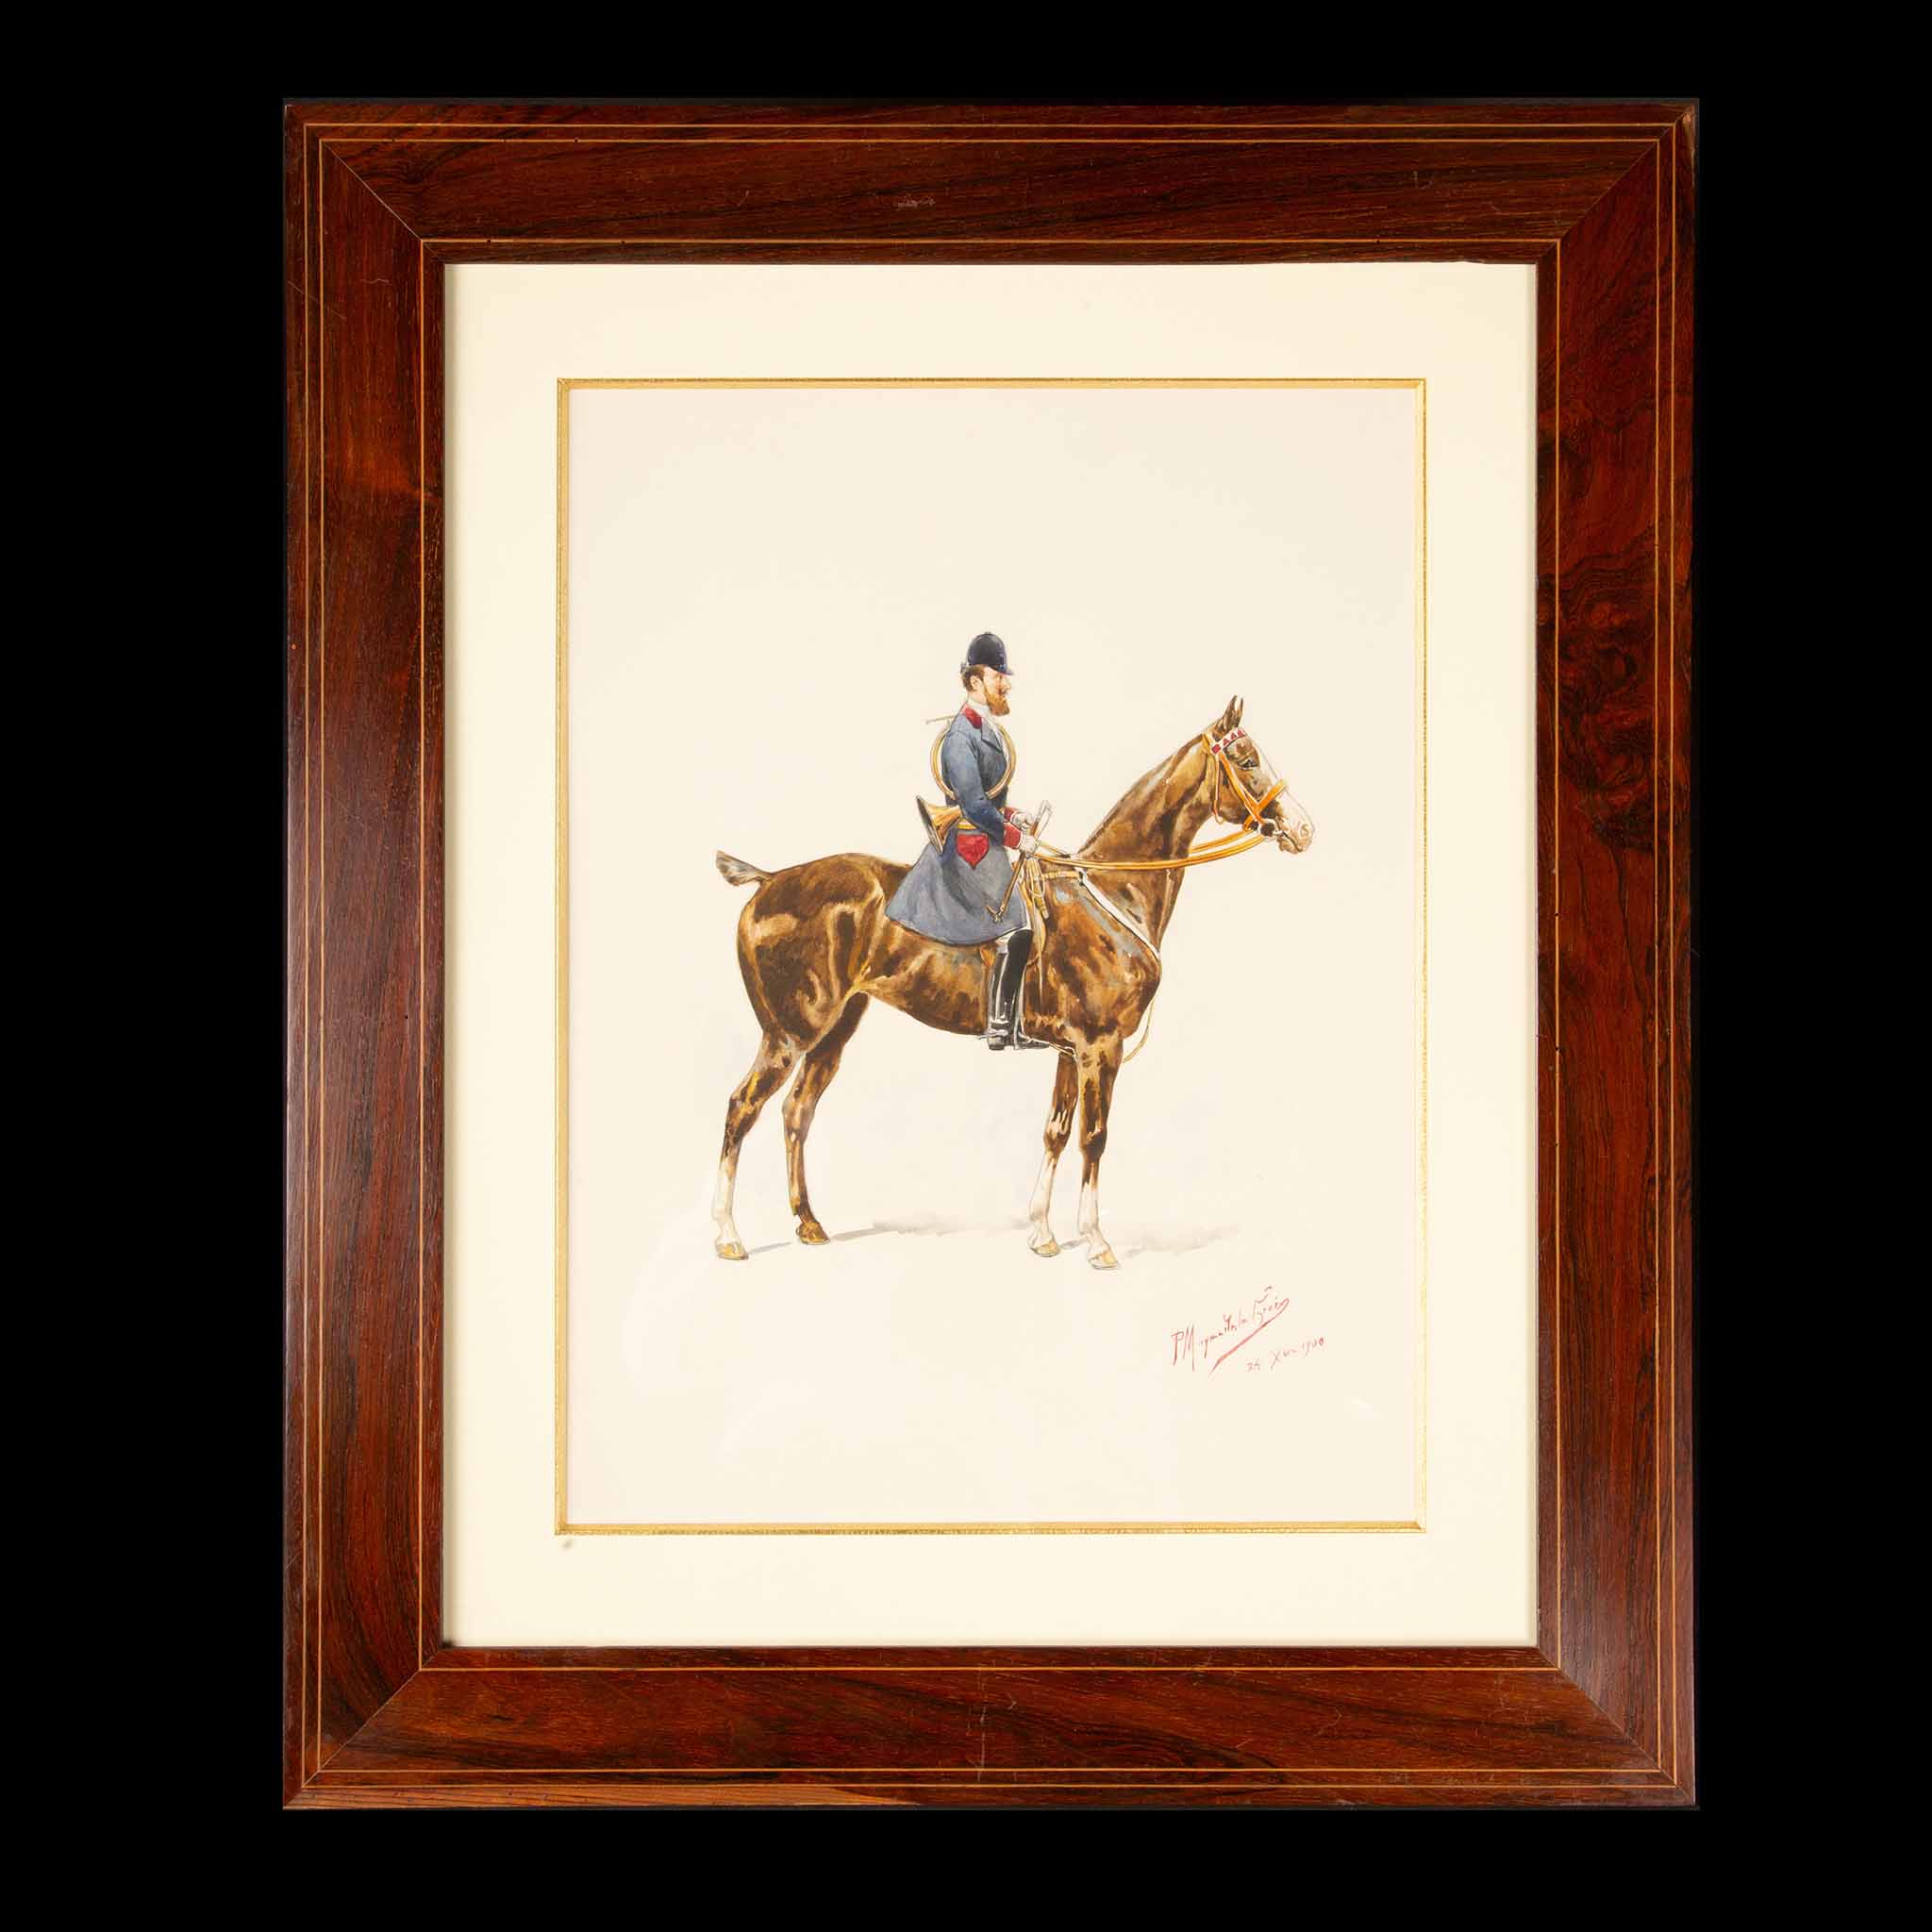 Timeless Equestrian Elegance: Paul Magne De La Croix's 1900 Watercolor